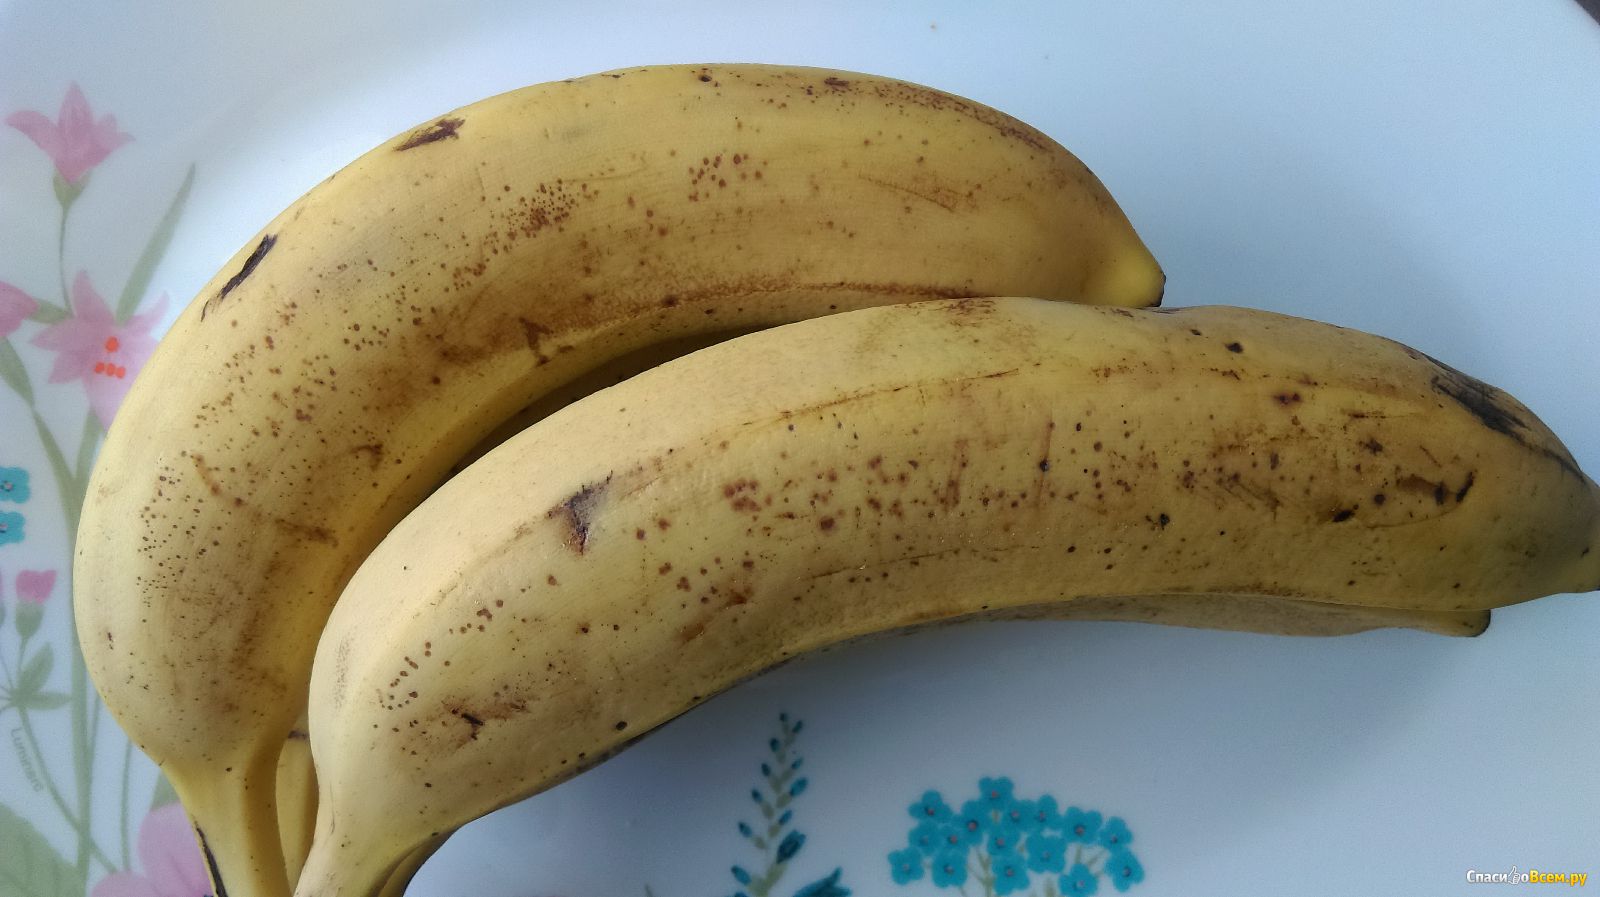 Банановая Диета Отзывы